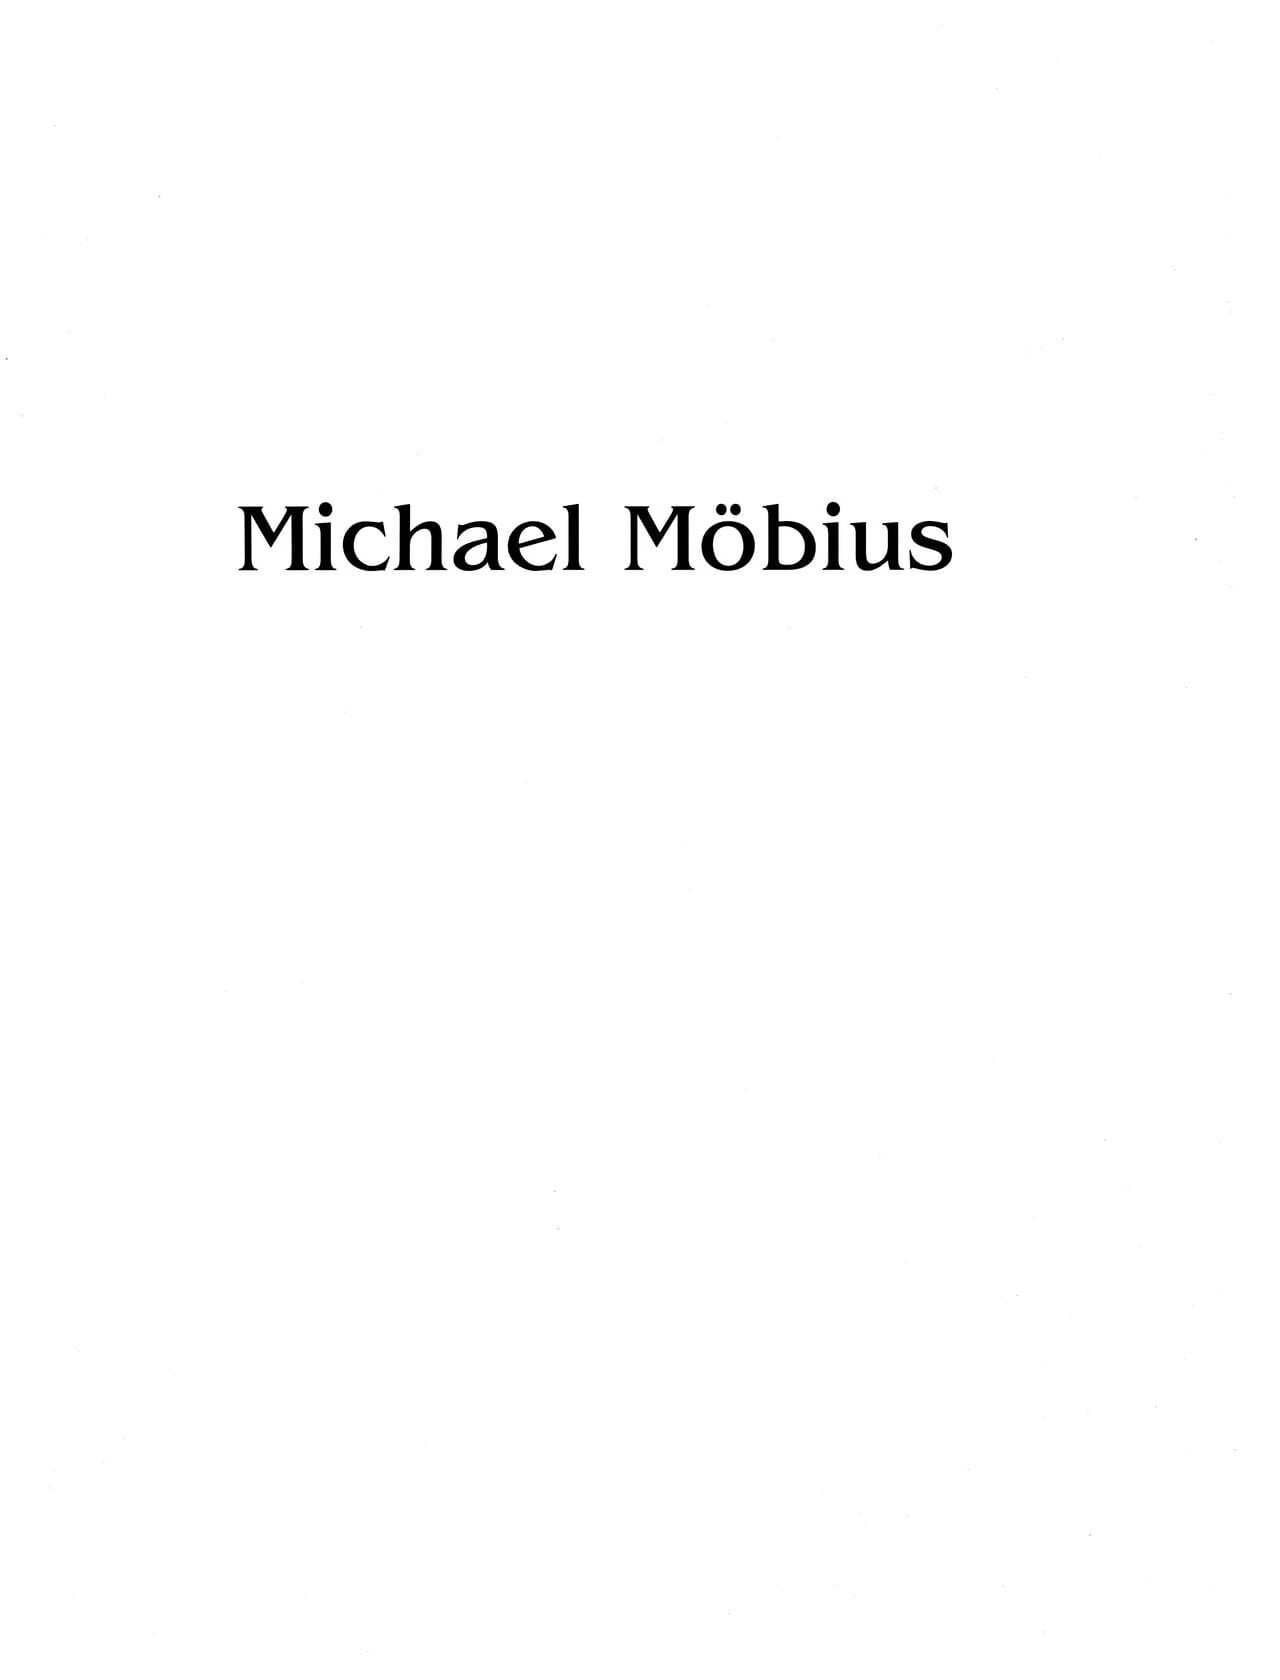 Art Premiere #02 - Michael Moebius page 1